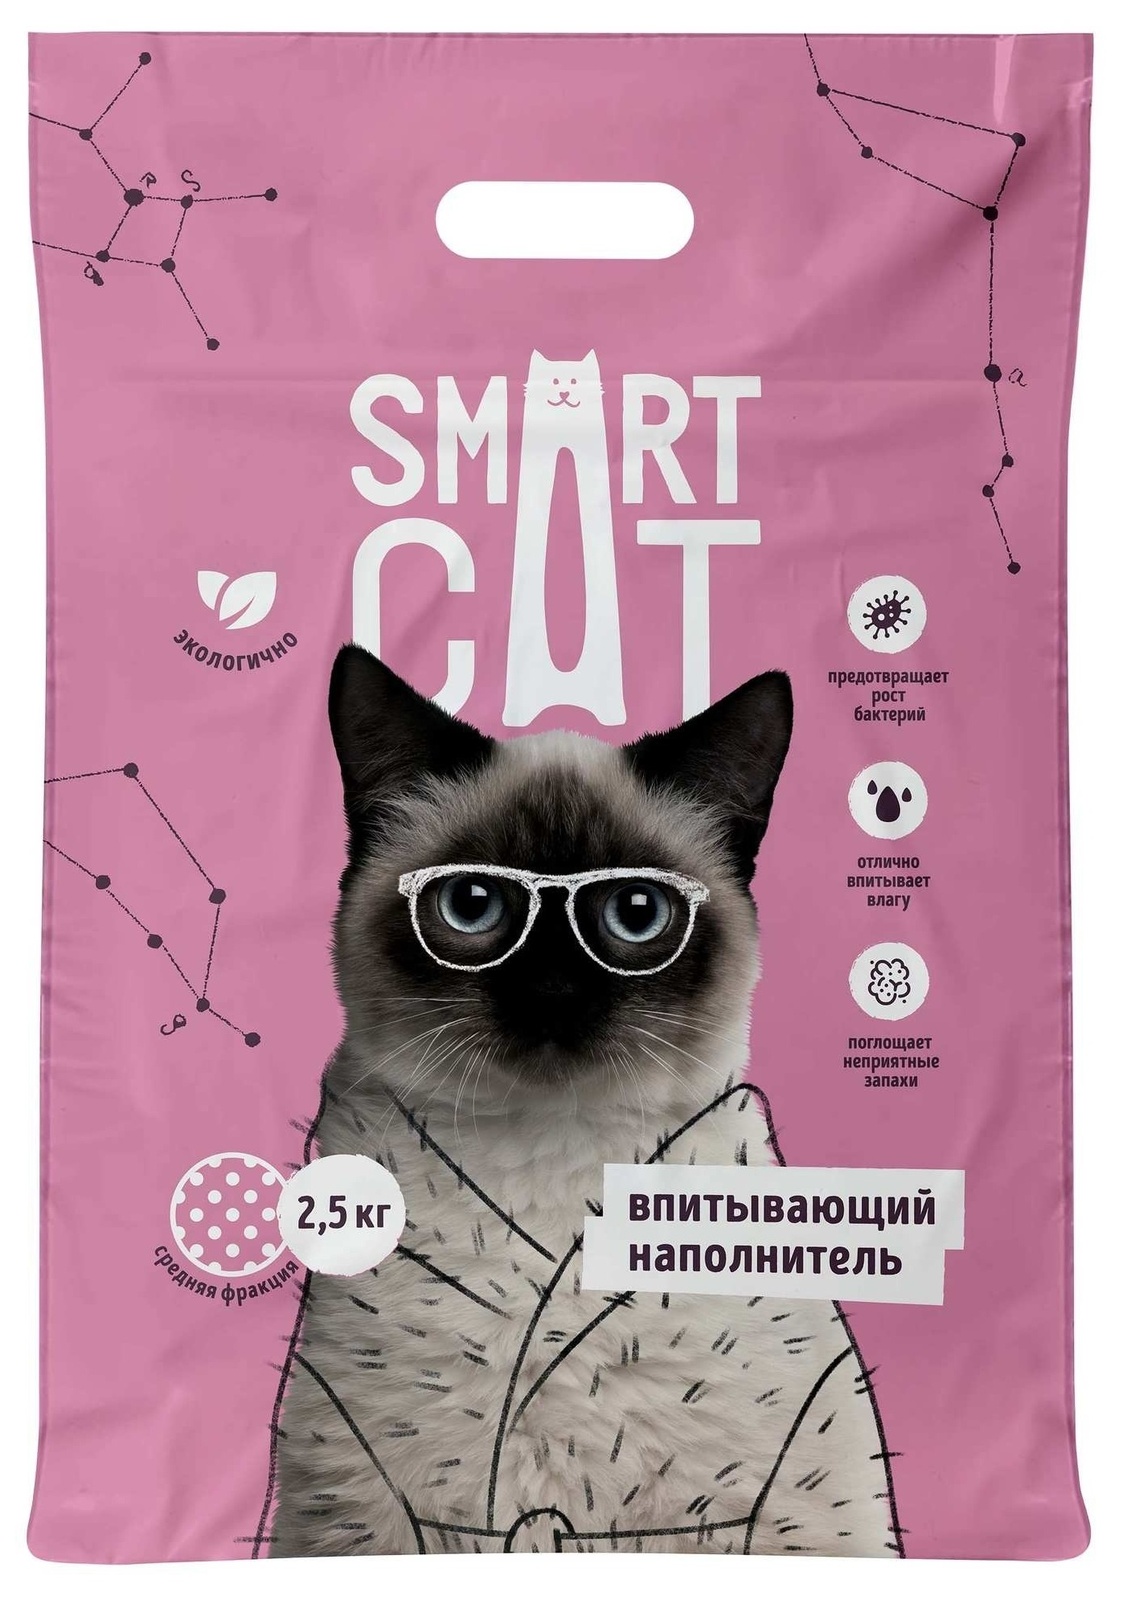 Smart Cat наполнитель Smart Cat наполнитель впитывающий наполнитель, средняя фракция (5 кг) smart cat наполнитель smart cat наполнитель комкующийся наполнитель тофу лаванда 2 5 кг